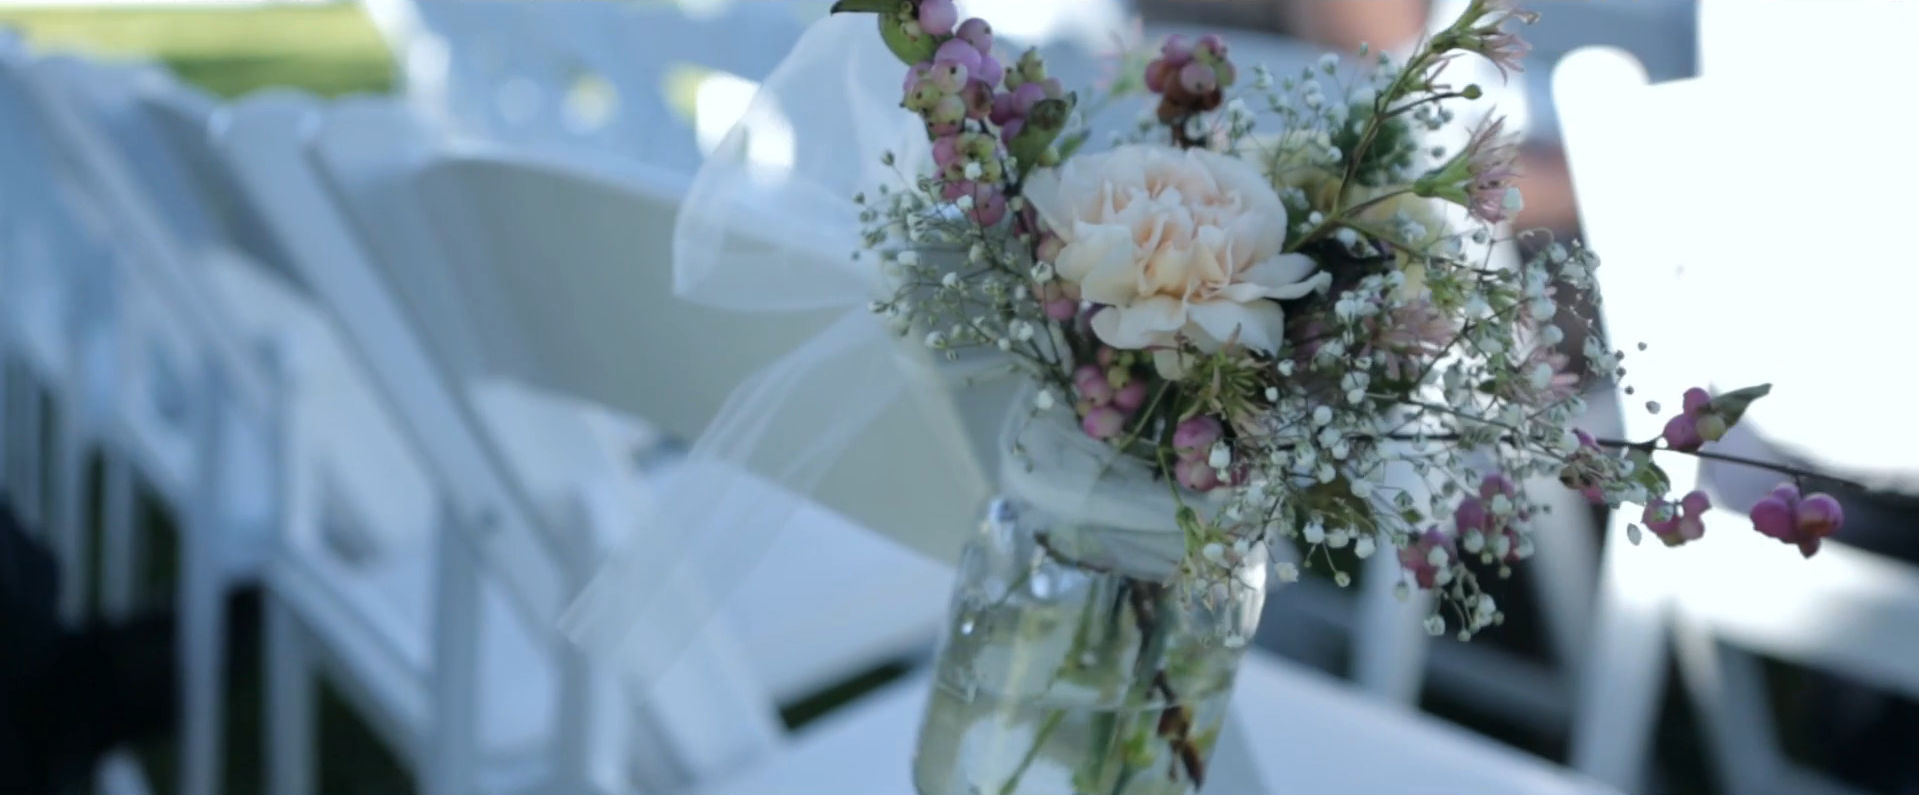 2015 08 20 1814 001 - A Whimsical Ojai Valley Inn & Spa Wedding Video